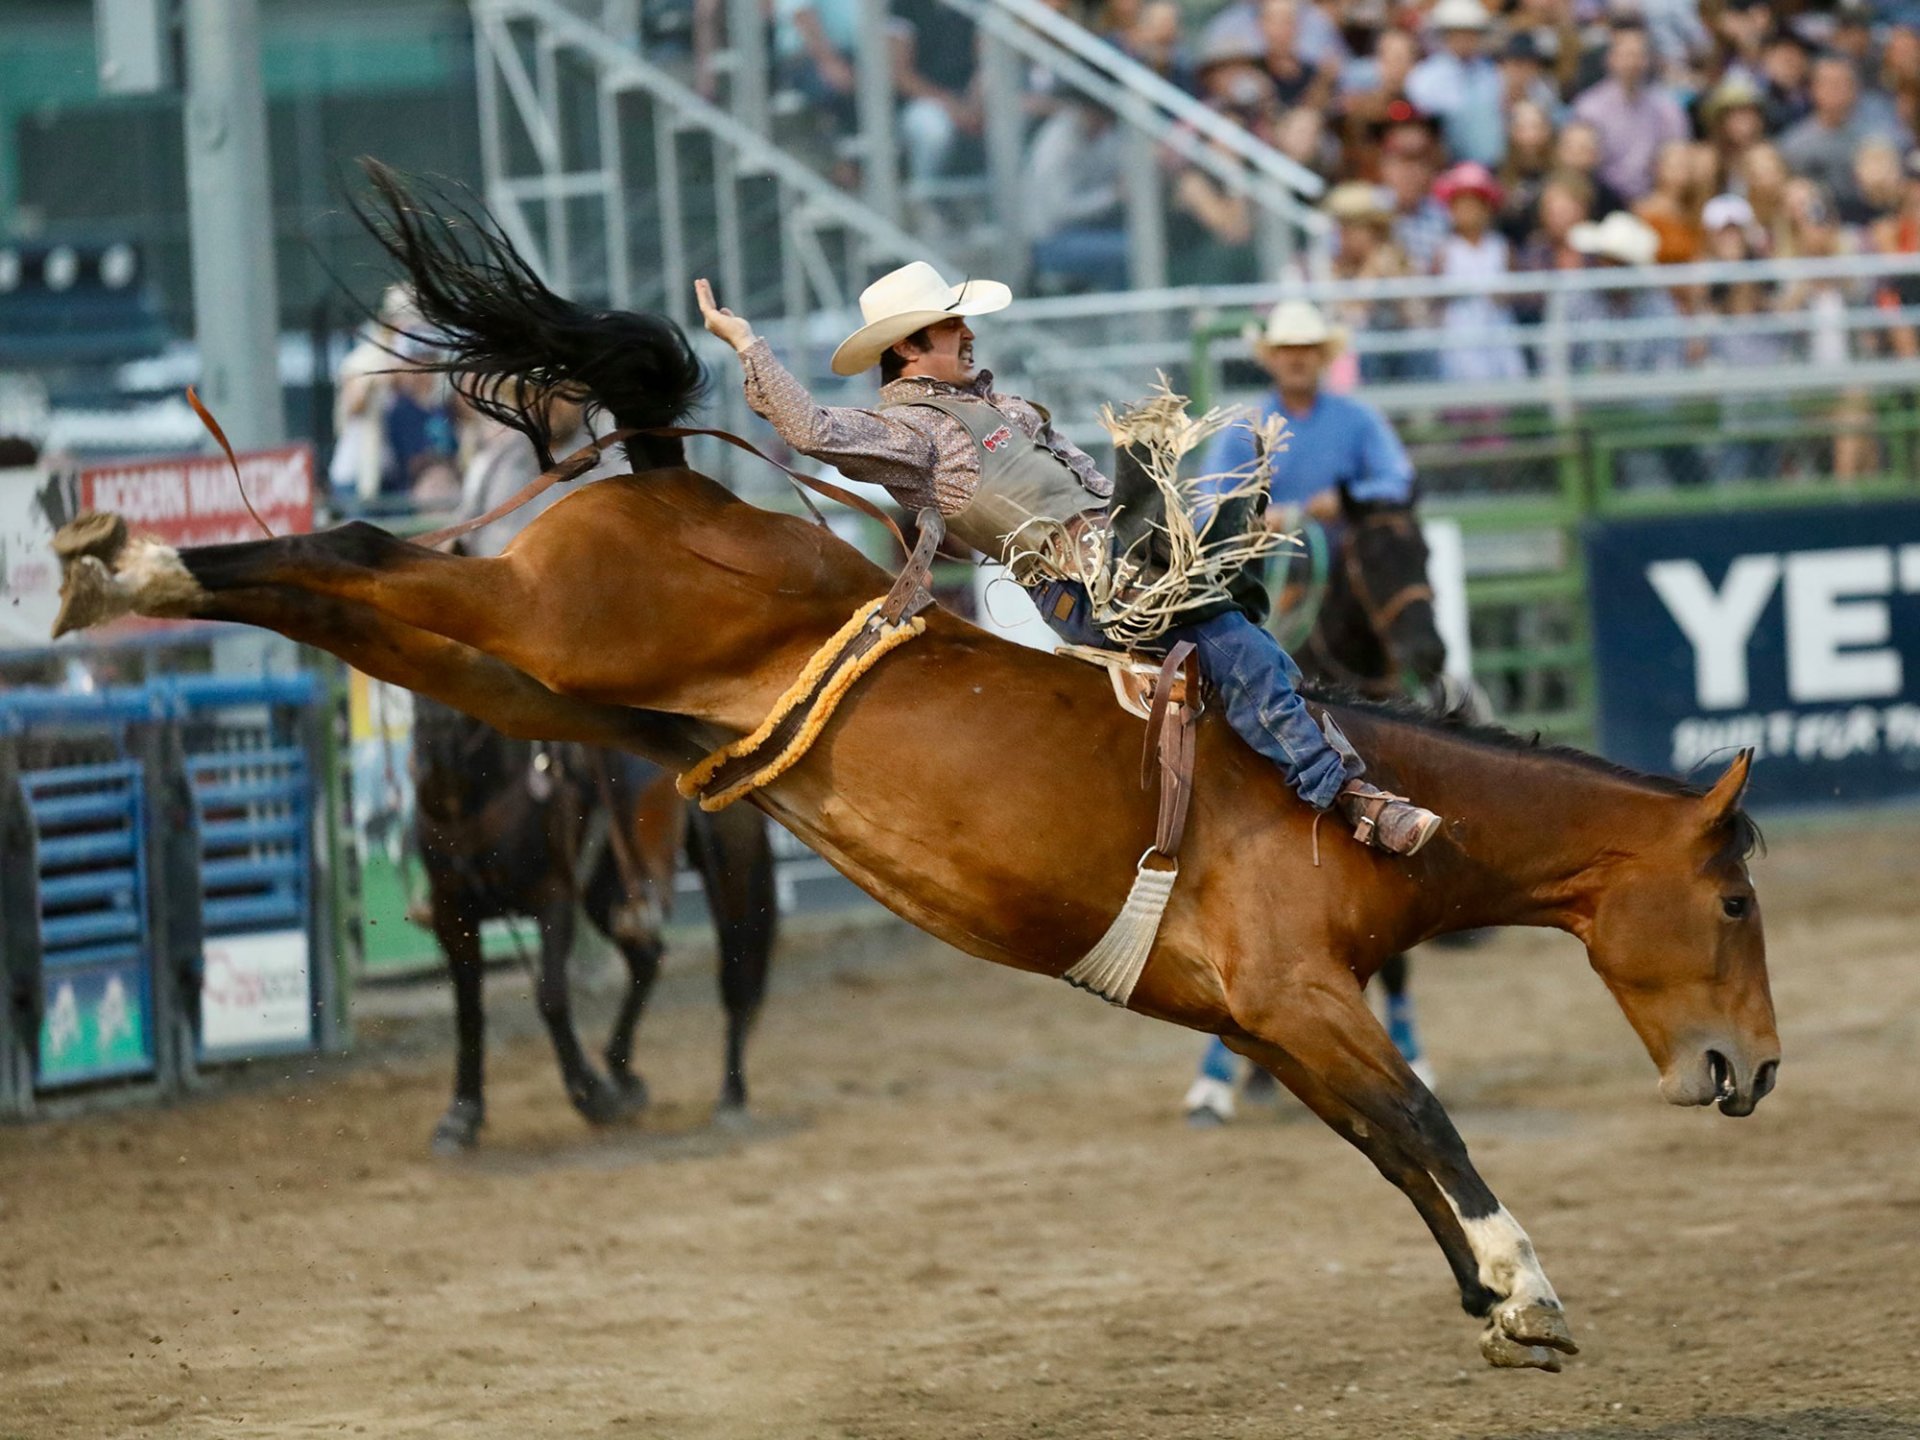  Historicky je rodeo spojeno s odchytem a krocením divokých koní, dobytkářstvím a rančerskou prací kovbojů. Dnes je to jinak, jsou to organizované akce